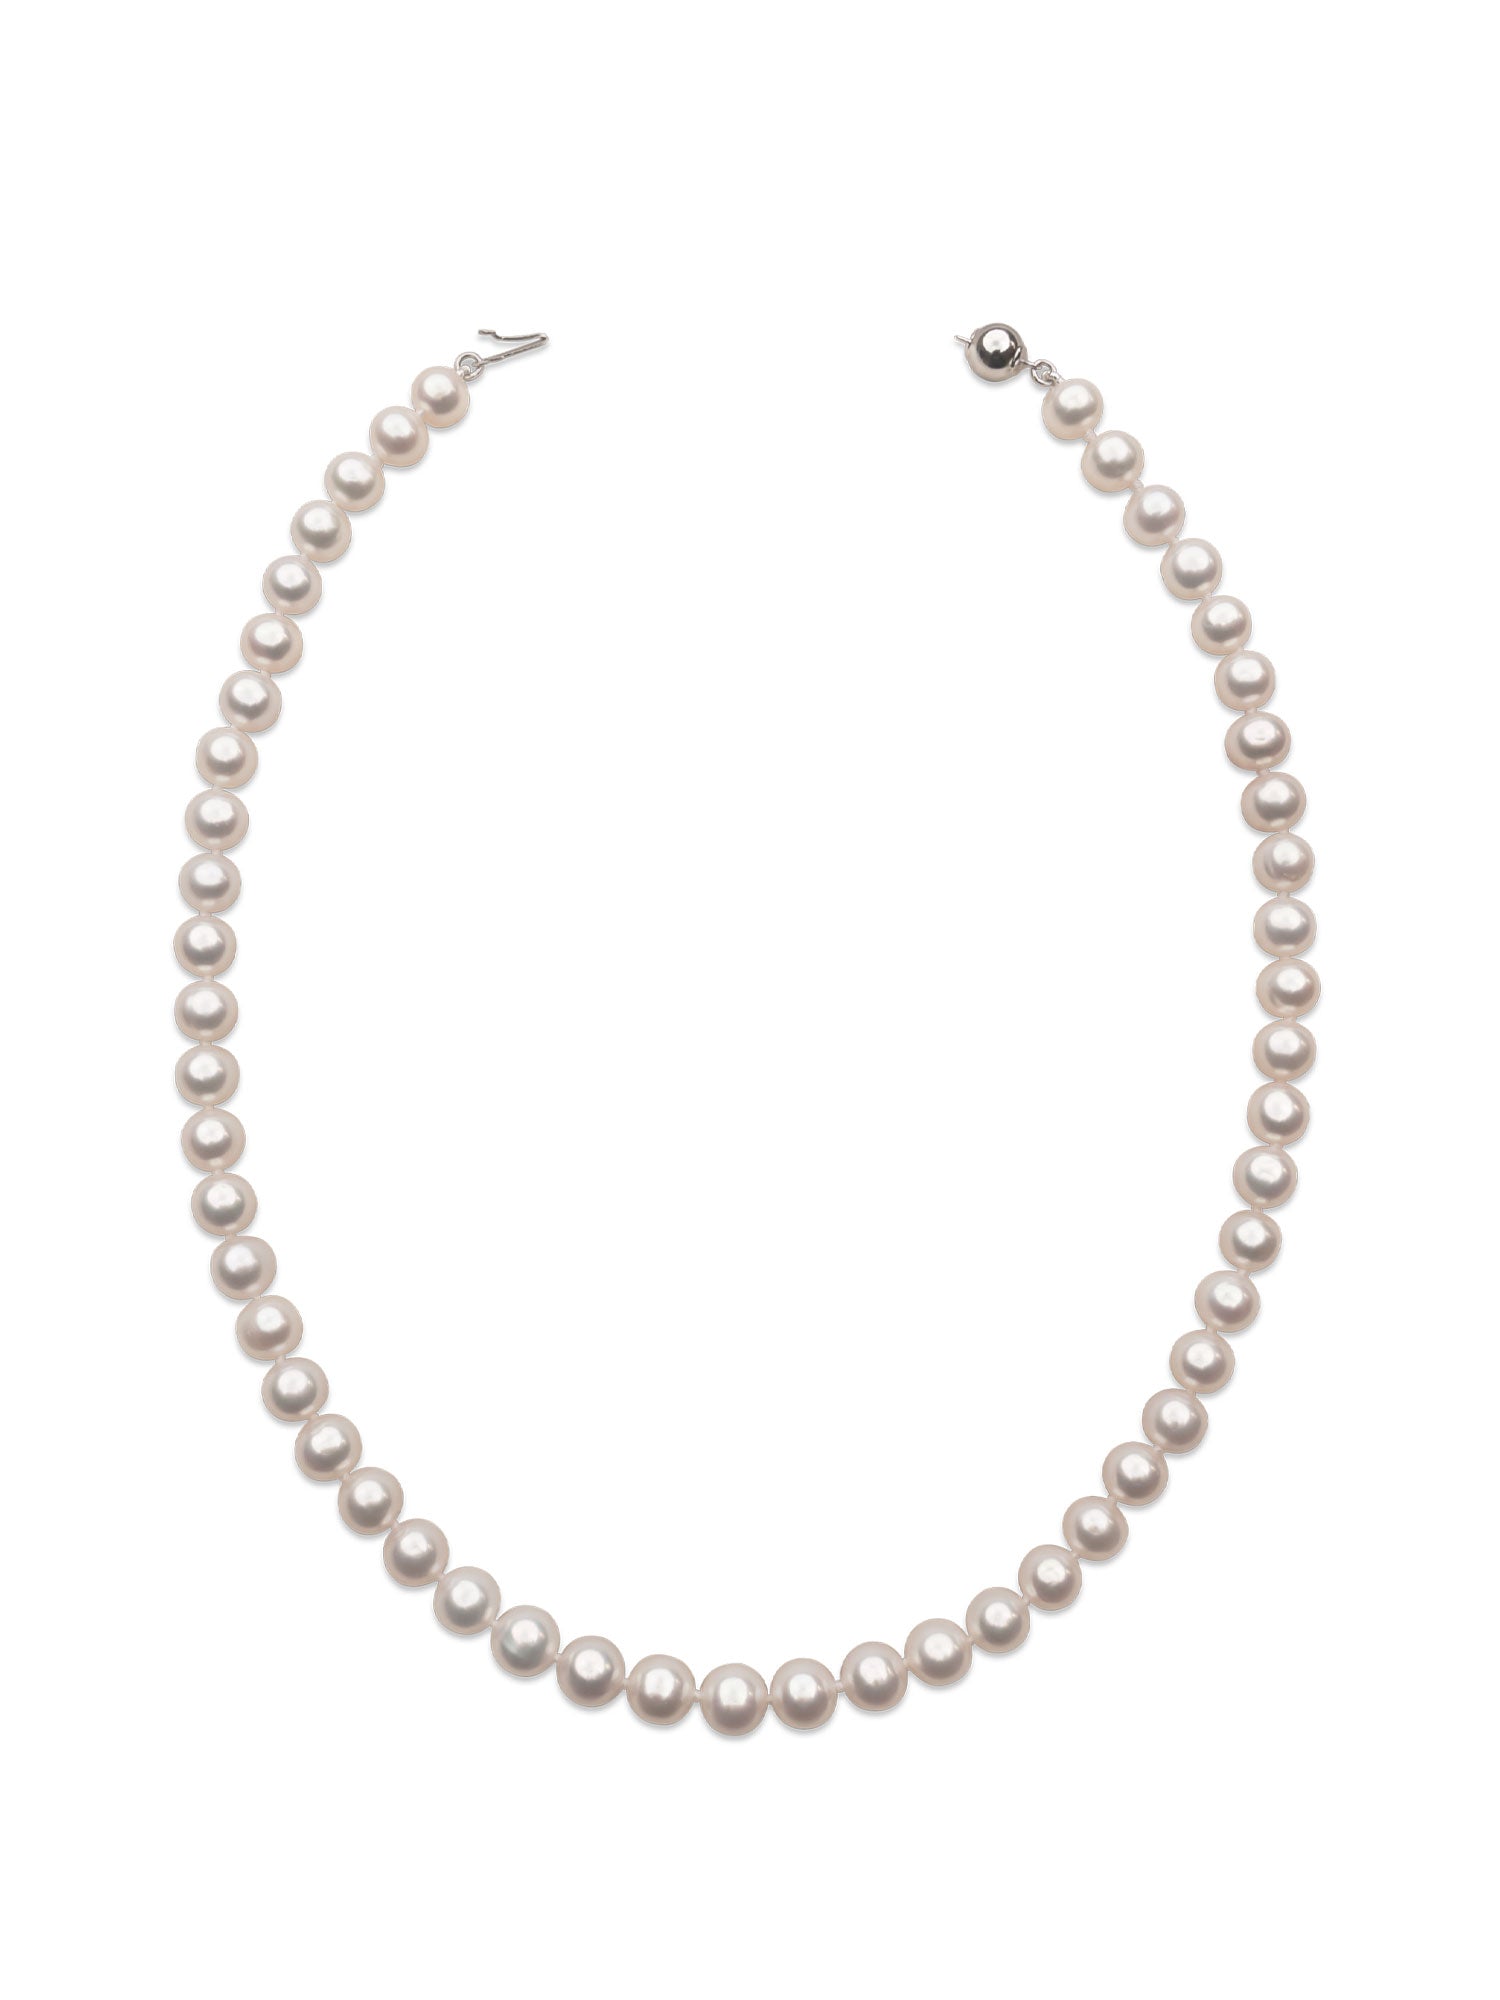 Collar de perlas cultivadas naturales de agua dulce redondas de 7,5 - 8,5 mm